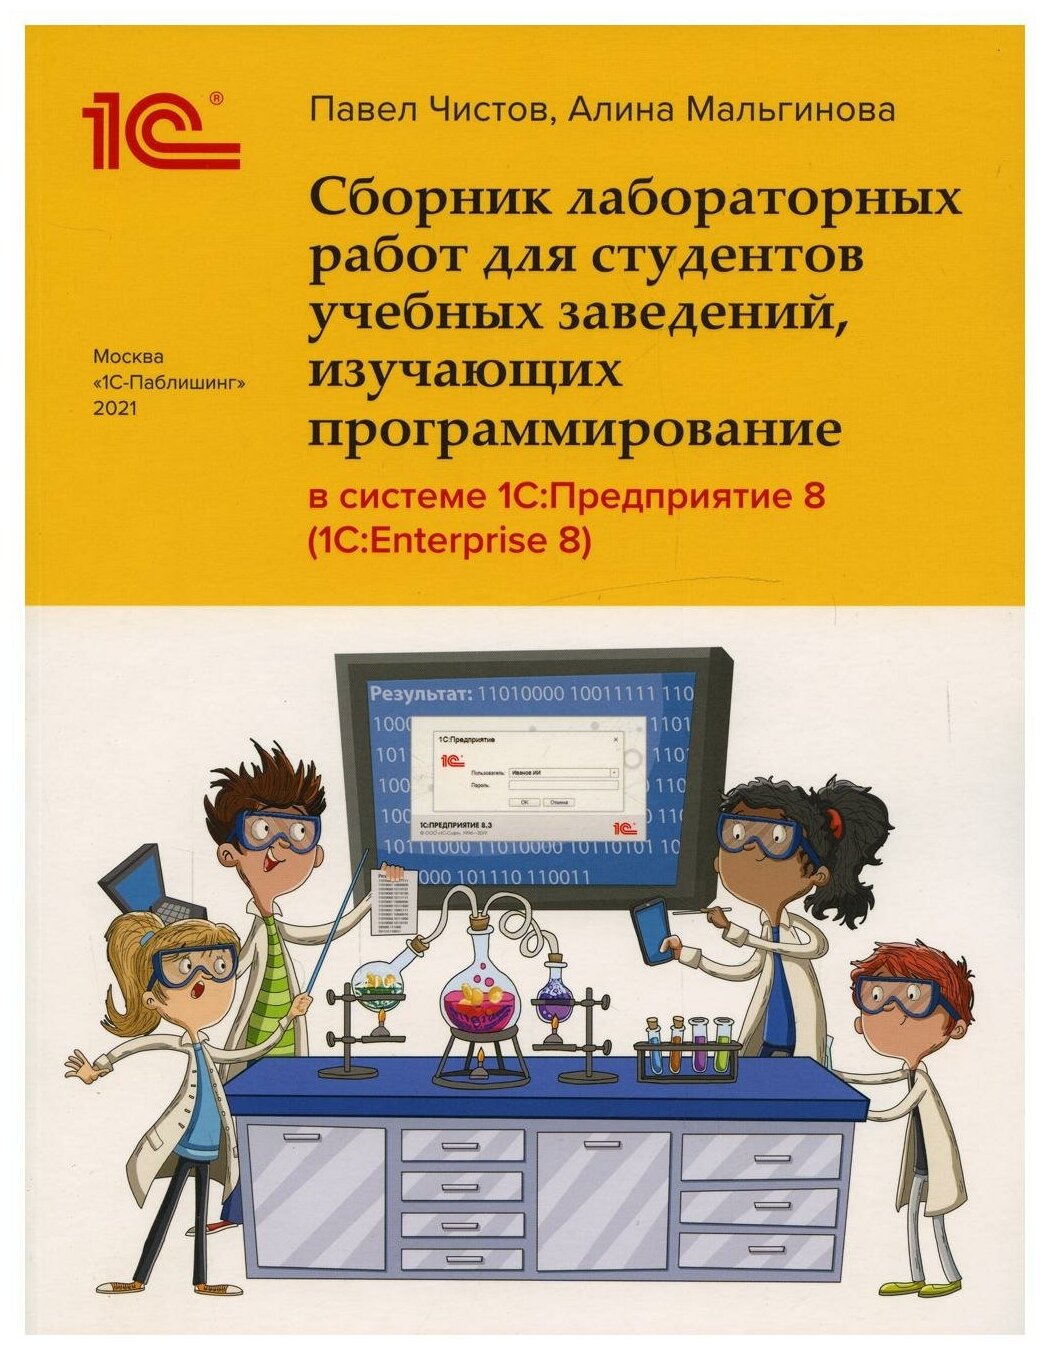 Сборник лабораторных работ в системе 1С:Предприятие (1С:Enterprise)